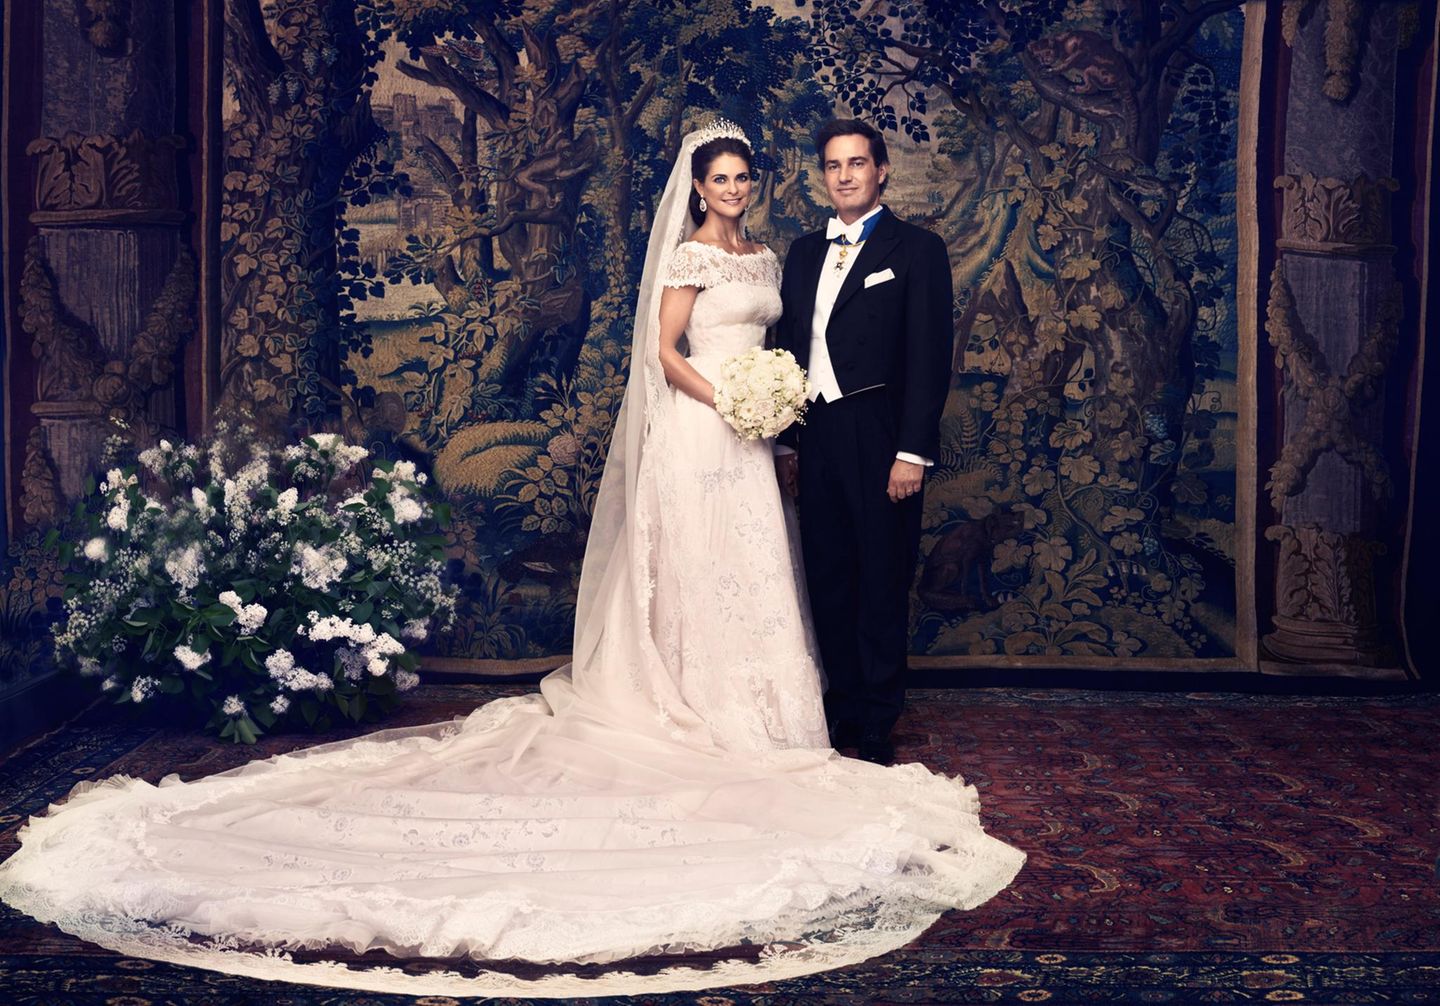 Das offizielle Hochzeitsfoto von Prinzessin Madeleine und Chris O'Neill